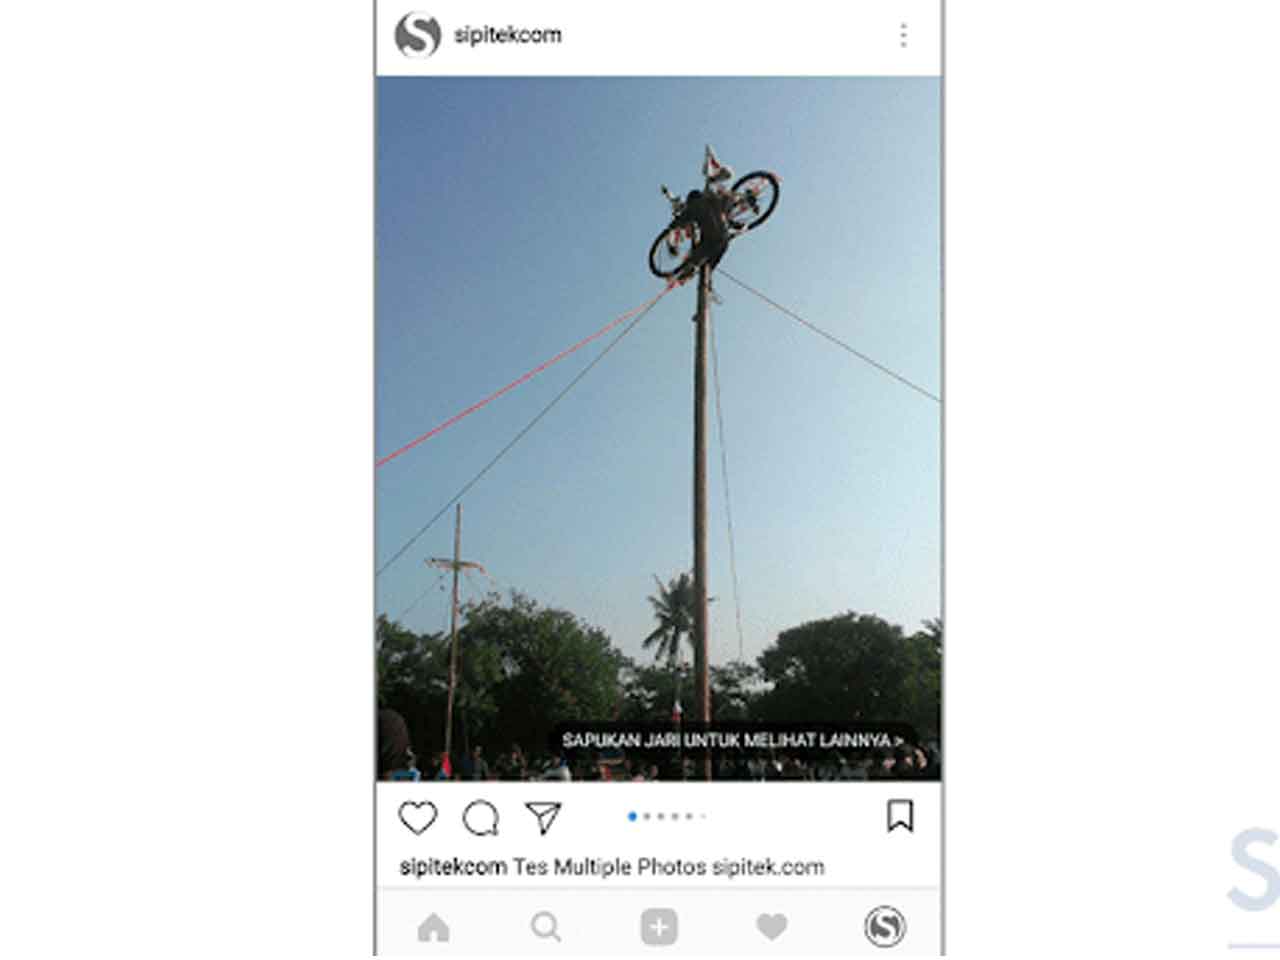 Cara Upload Multiple Foto Di Instagram Tanpa Terpotong. Cara Upload Banyak Foto Sekaligus di Instagram Tanpa Crop